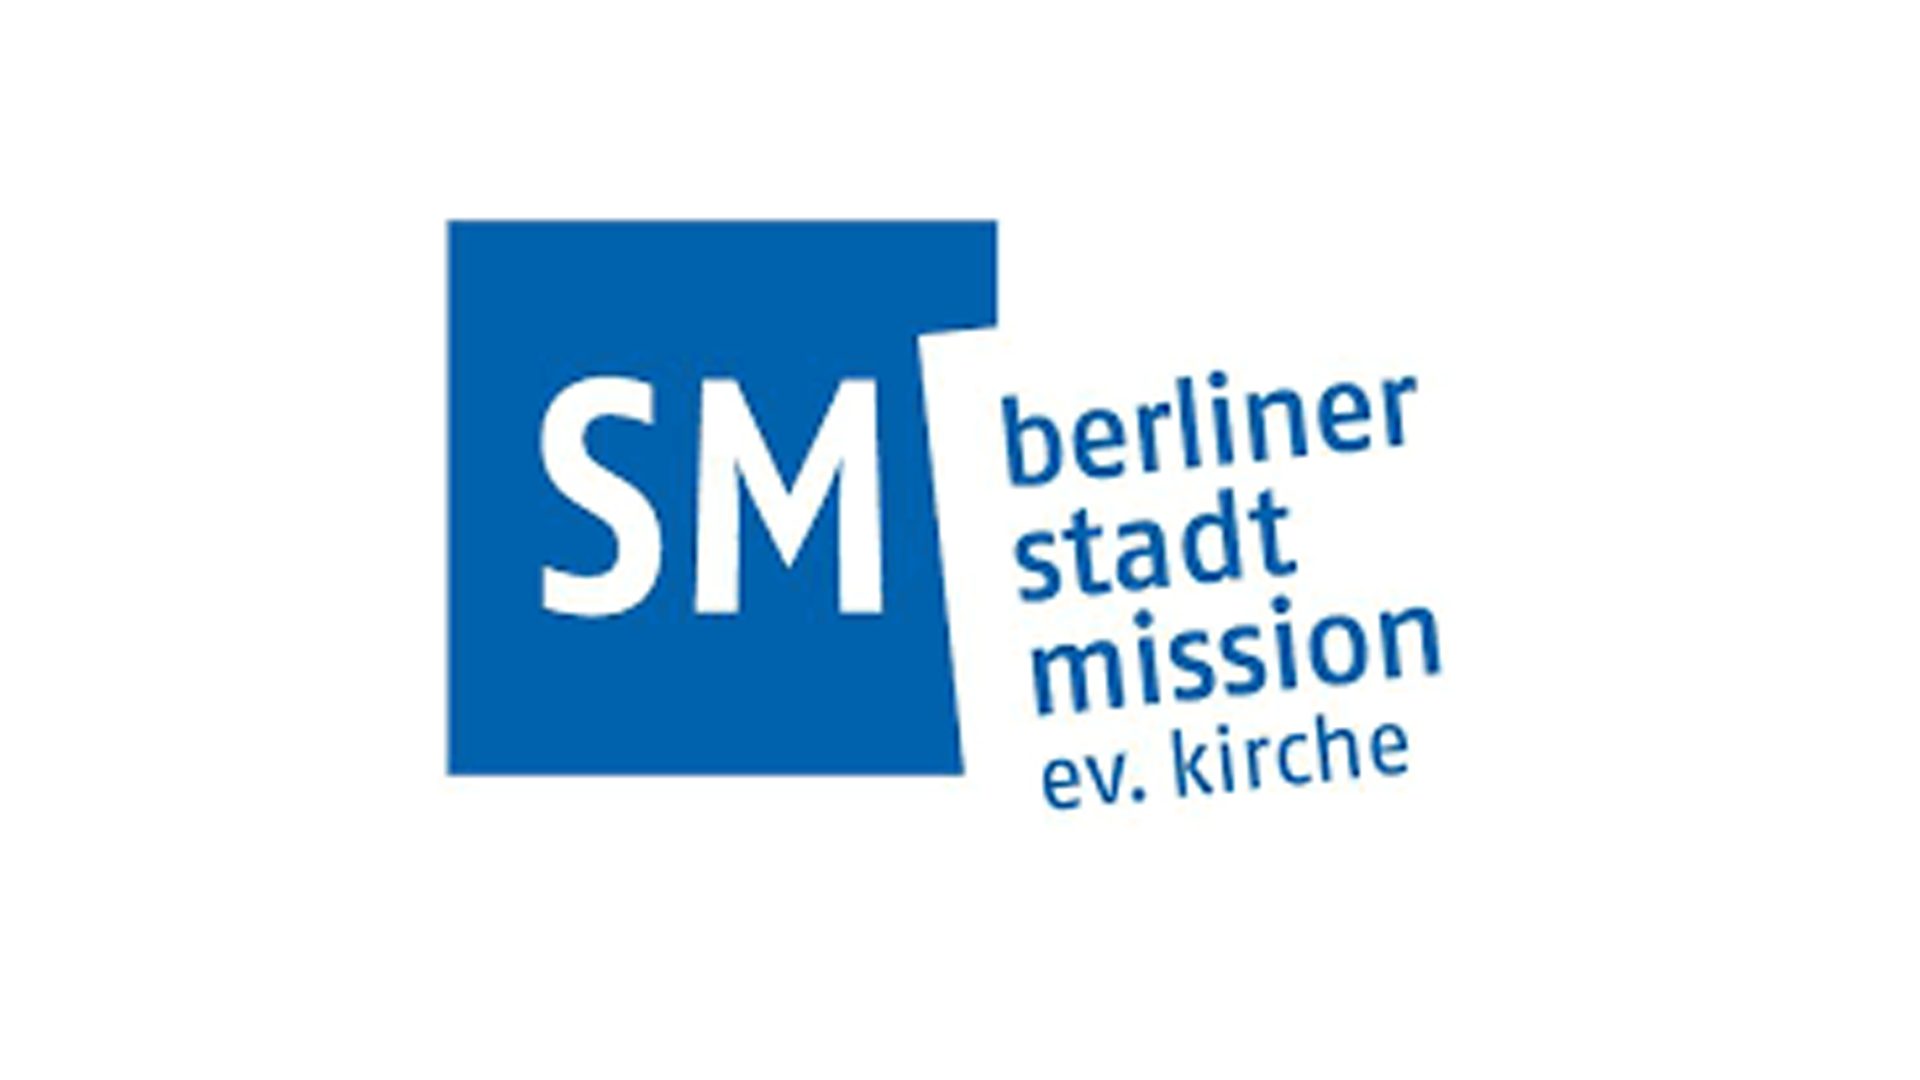 kakoii entwickelt Fundraising-Kampagne für die Kältehilfe der Berliner Stadtmission